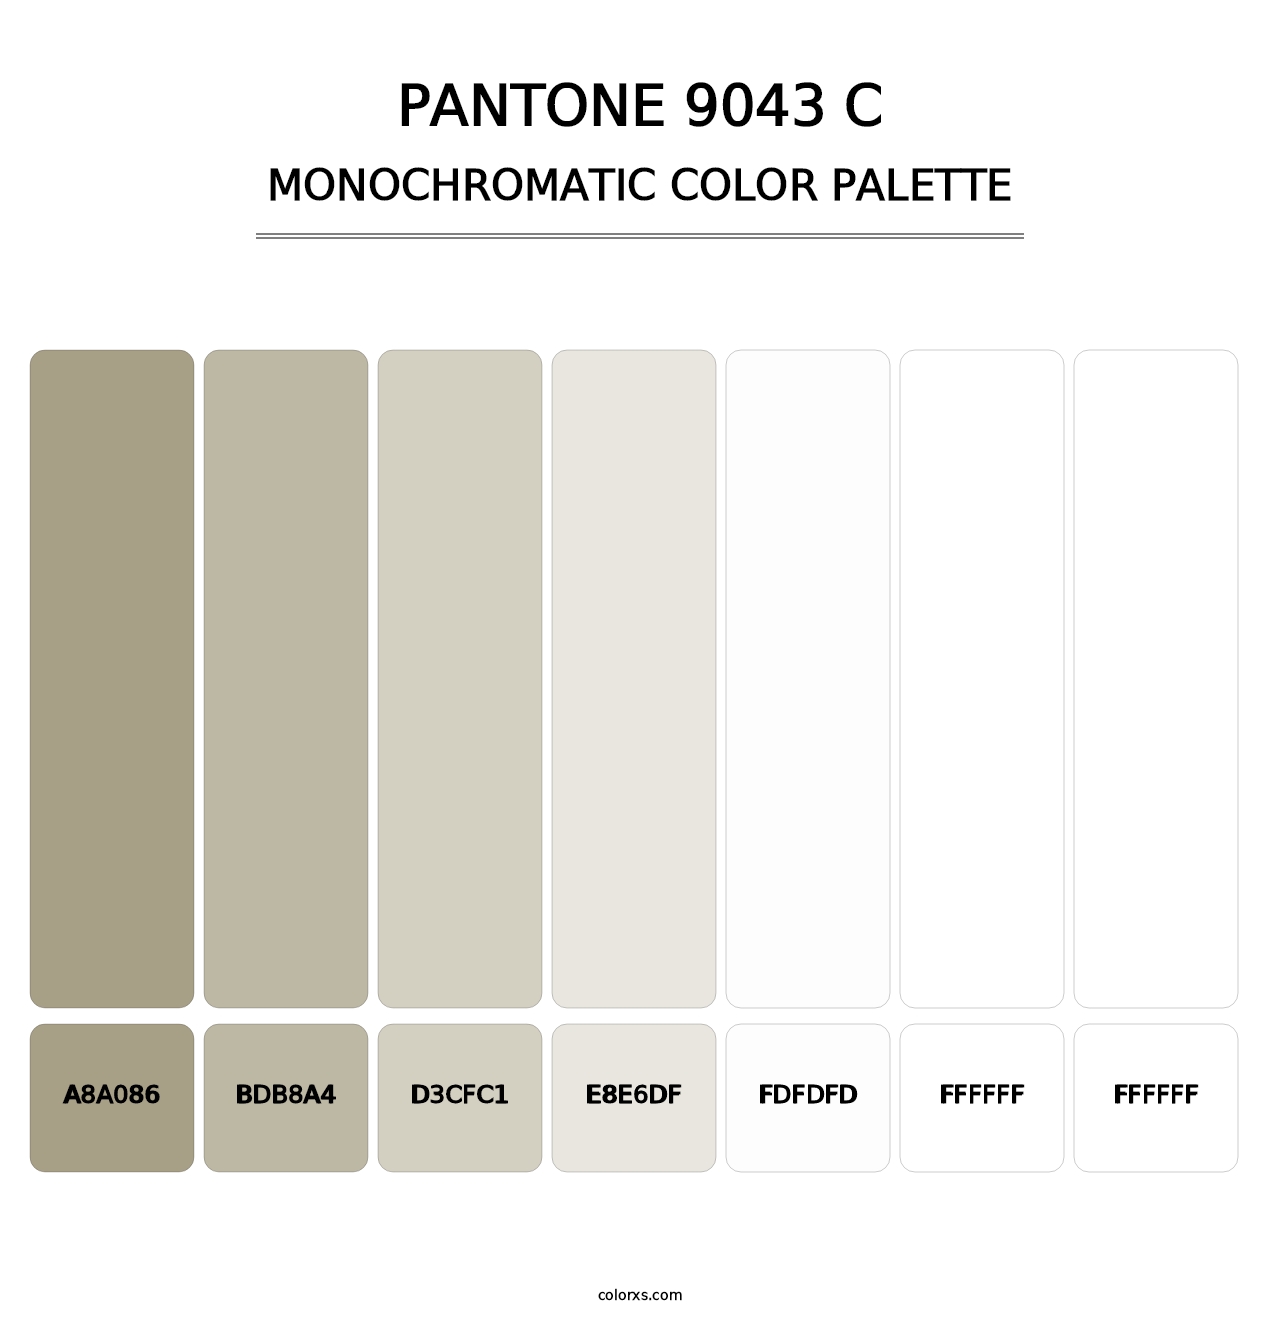 PANTONE 9043 C - Monochromatic Color Palette